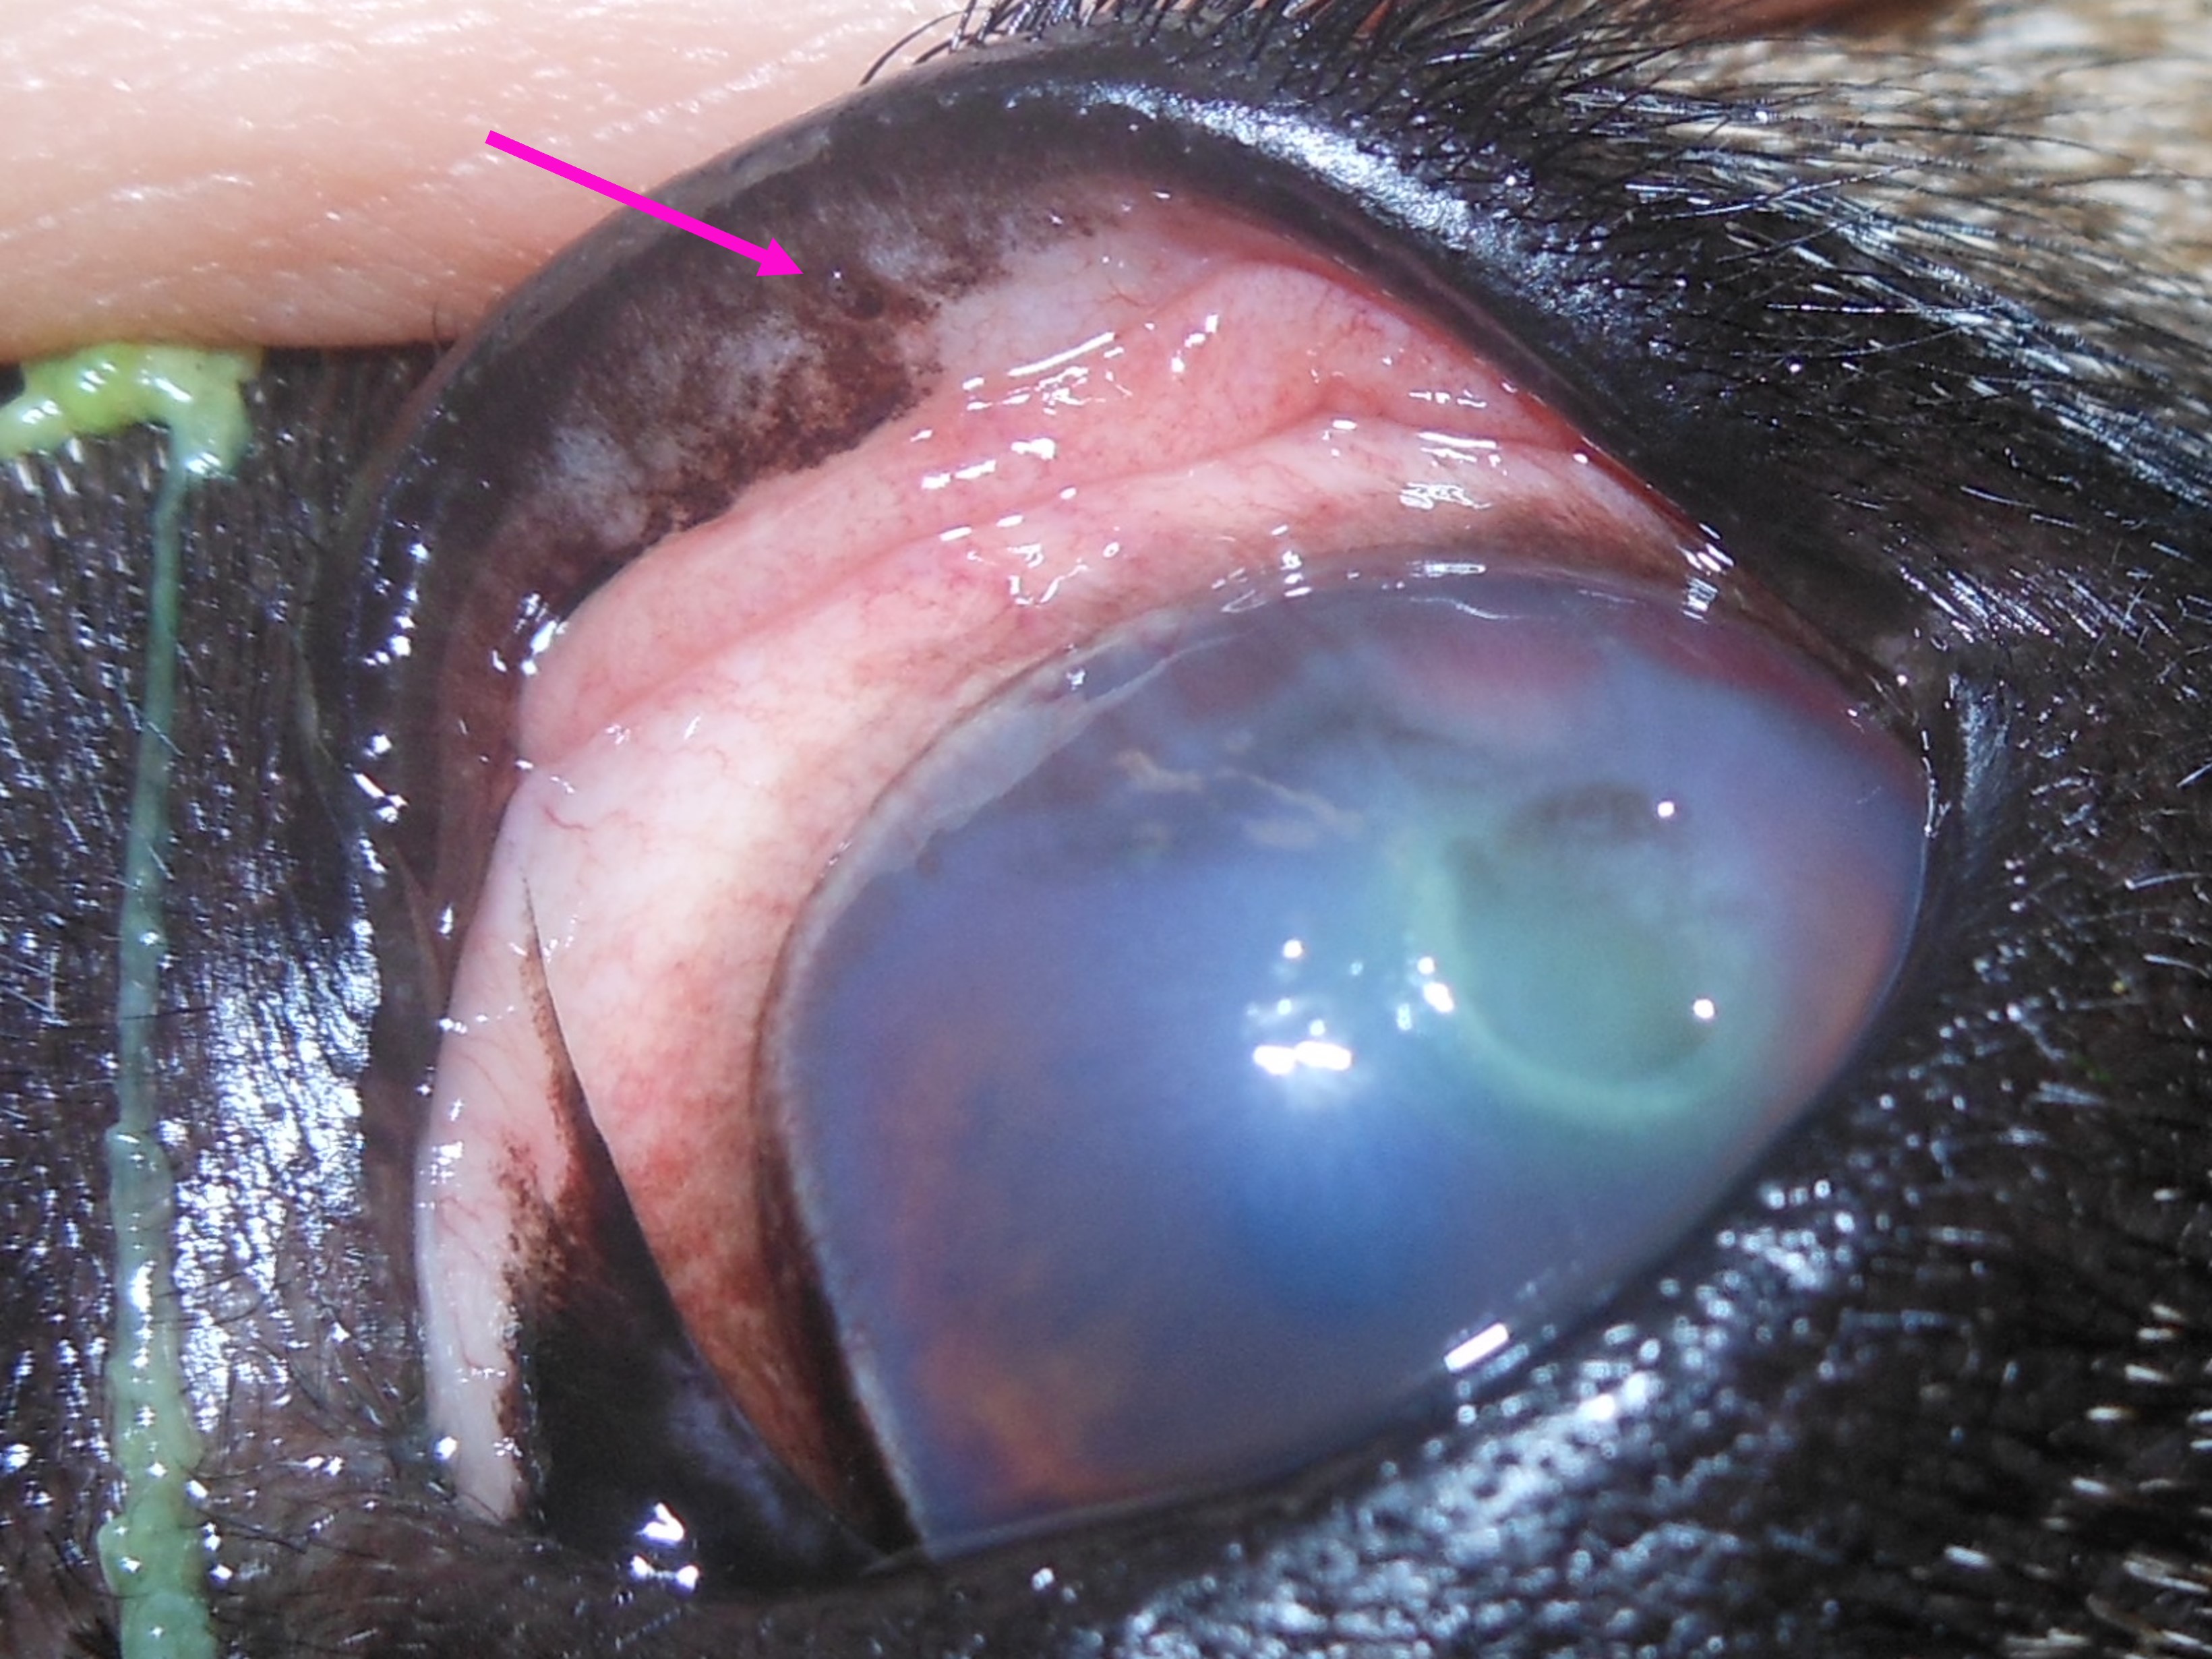 Foto von Majas Auge mit großem Hornhautdefekt und hochgezogenem Augenlid mit kleinem Härchen darin.